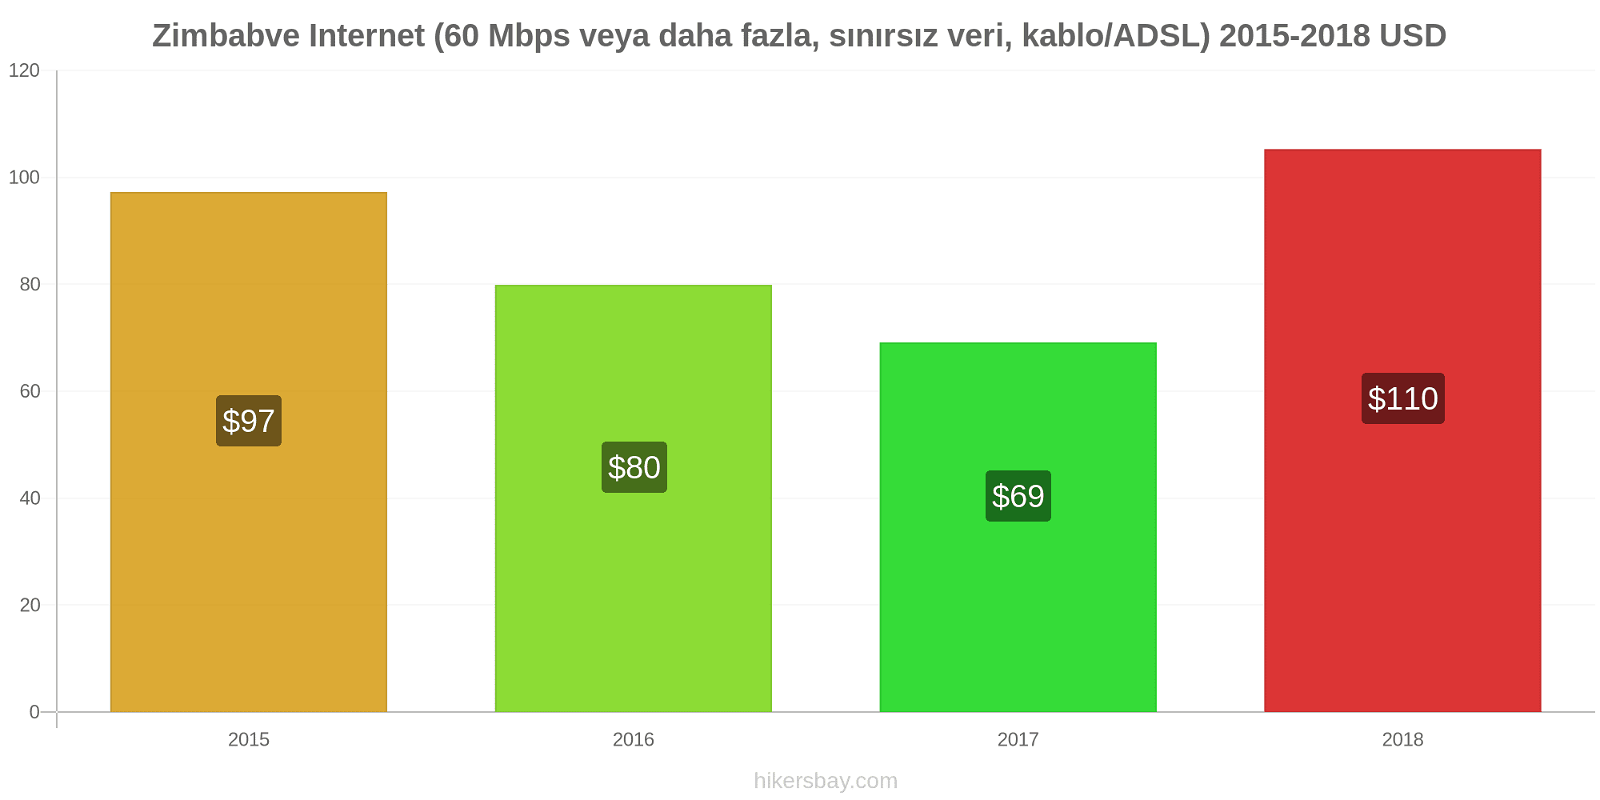 Zimbabve fiyat değişiklikleri İnternet (60 Mbps veya daha fazla, sınırsız veri, kablo/ADSL) hikersbay.com